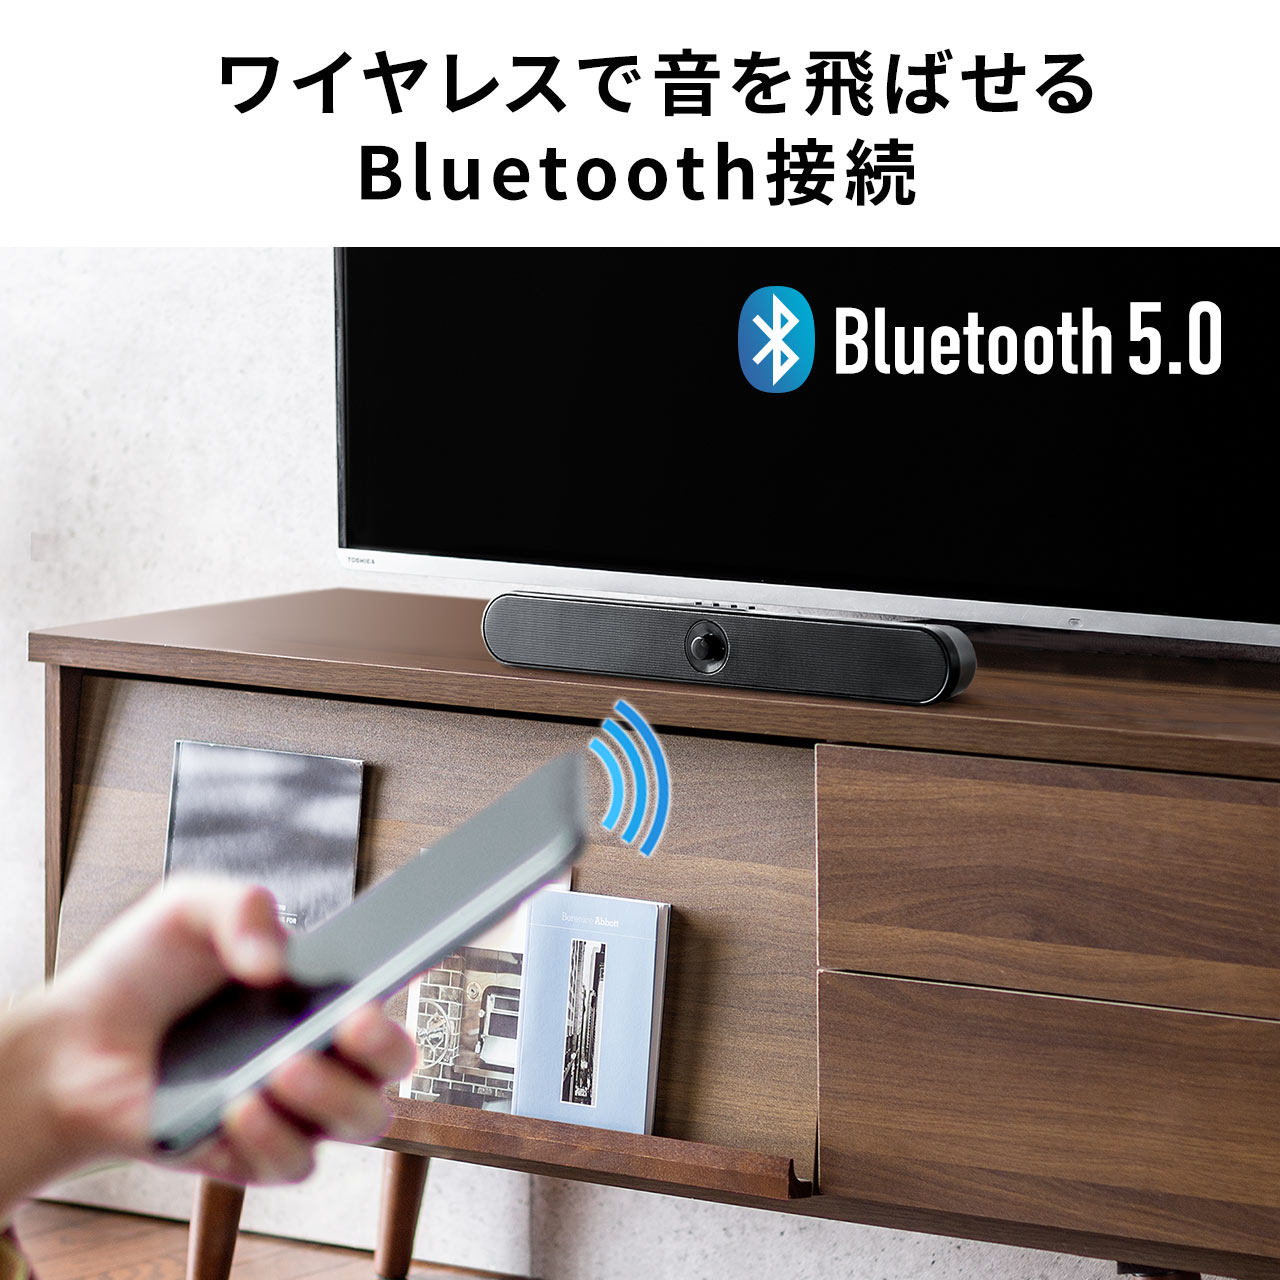 サウンドバー 20W出力 Bluetooth対応 バッテリー内蔵型 パソコン スマートフォン Bluetoothスピーカー 400-SP092